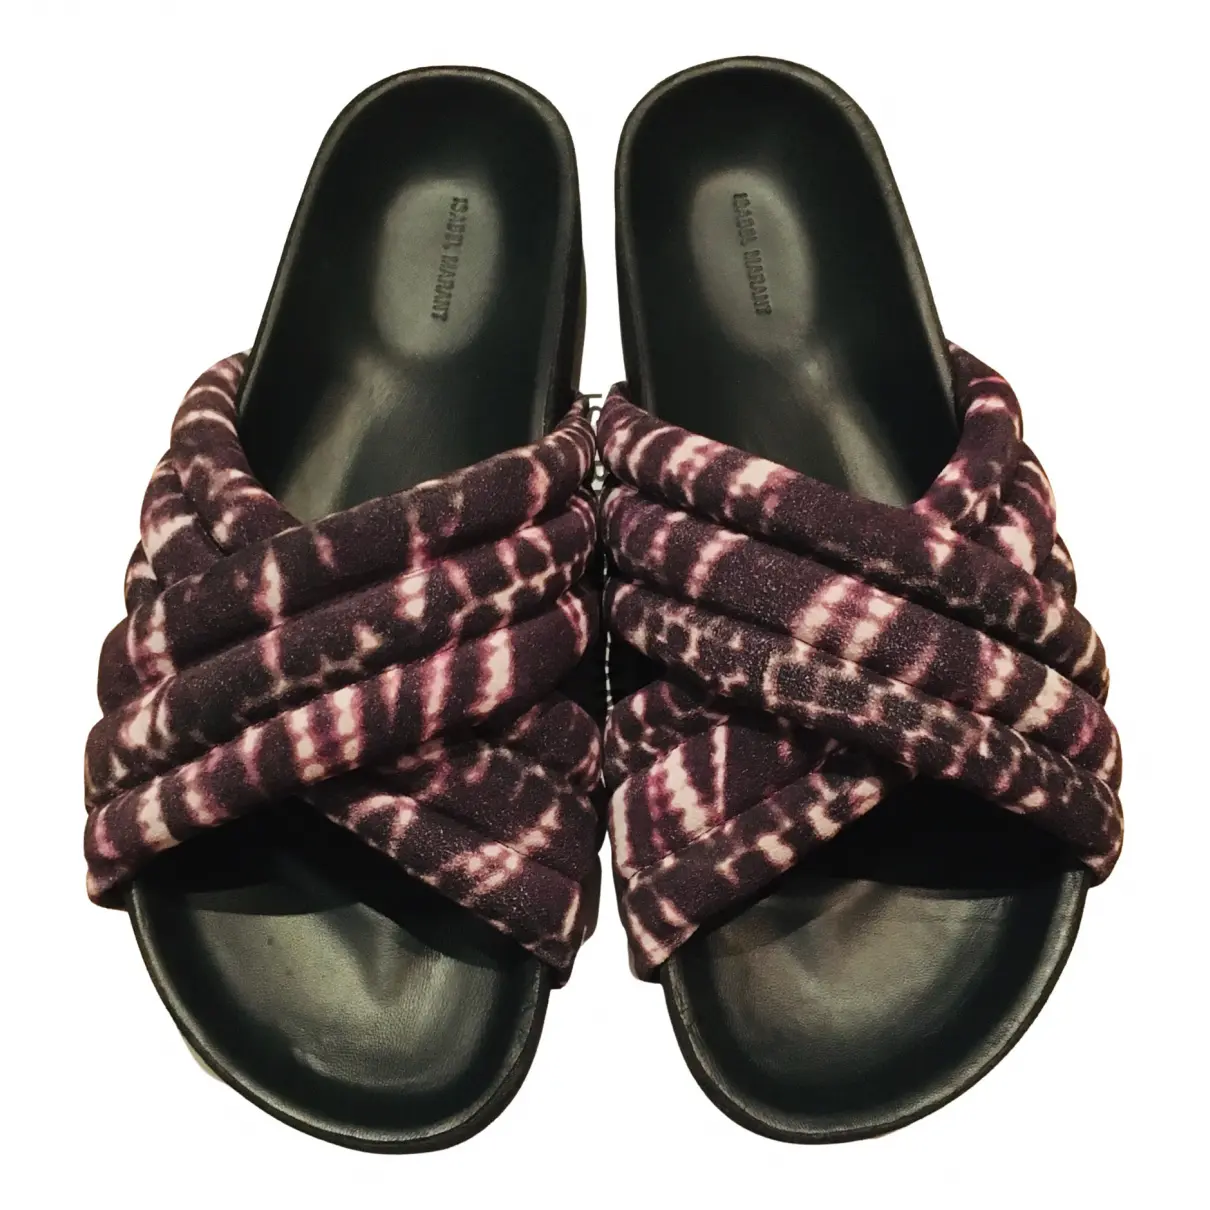 Holden leather sandal Isabel Marant